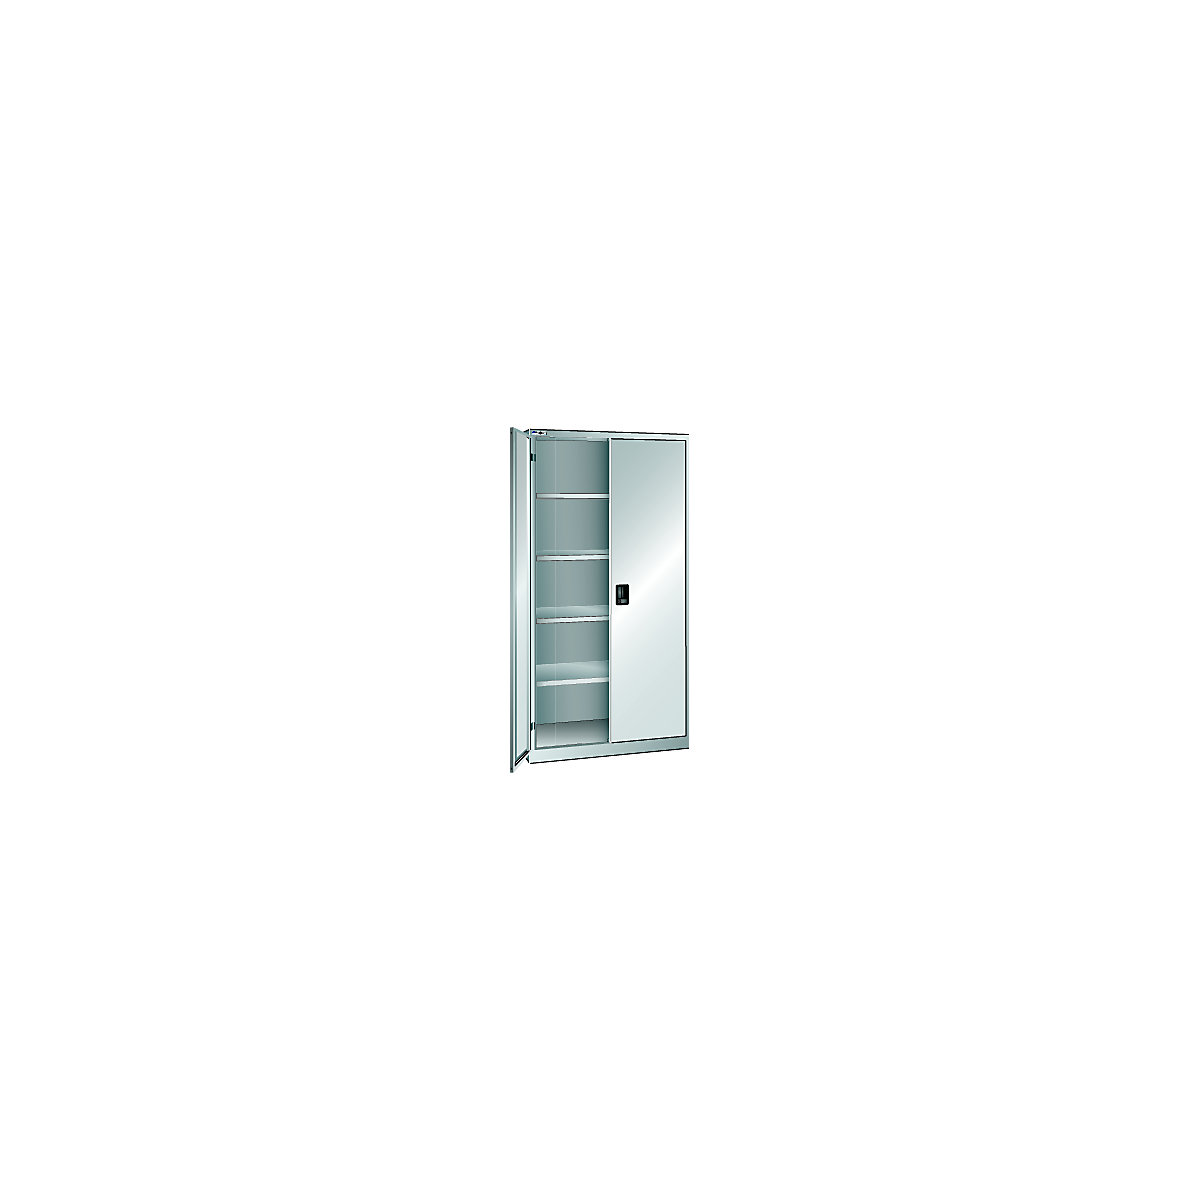 LISTA – Ormar s krilnim vratima, vrata od punog lima, VxŠ 1950 x 1000 mm, dubina 400 mm, u svijetlosivoj boji RAL 7035